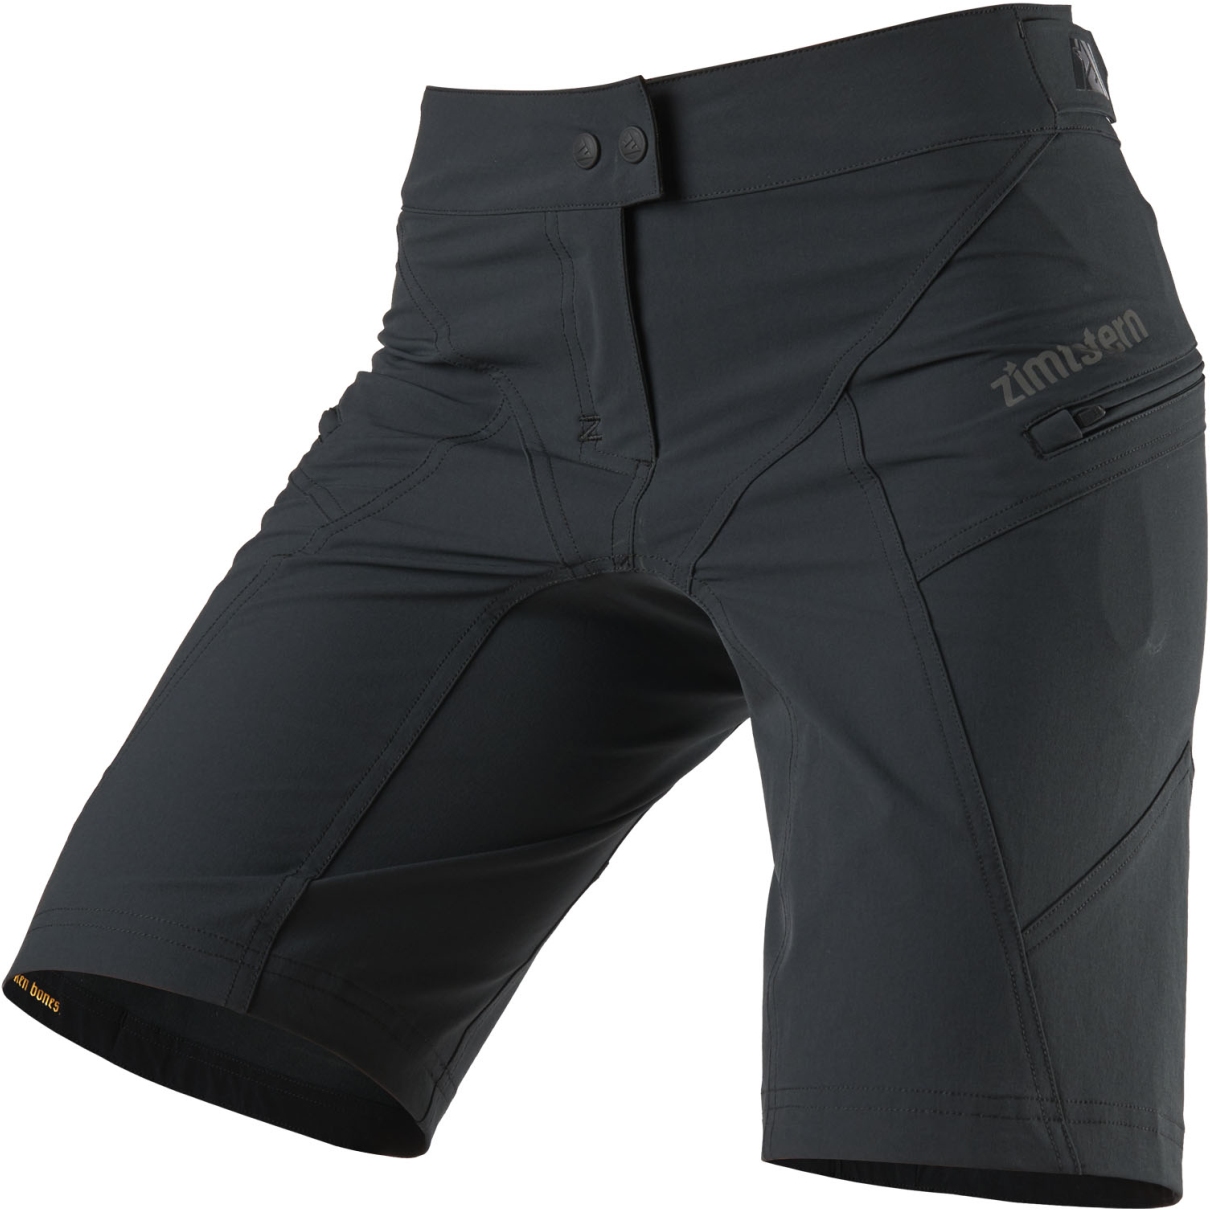 Produktbild von Zimtstern Startrackz Evo SL Damen MTB-Shorts - Pirate Black/Pirate Black